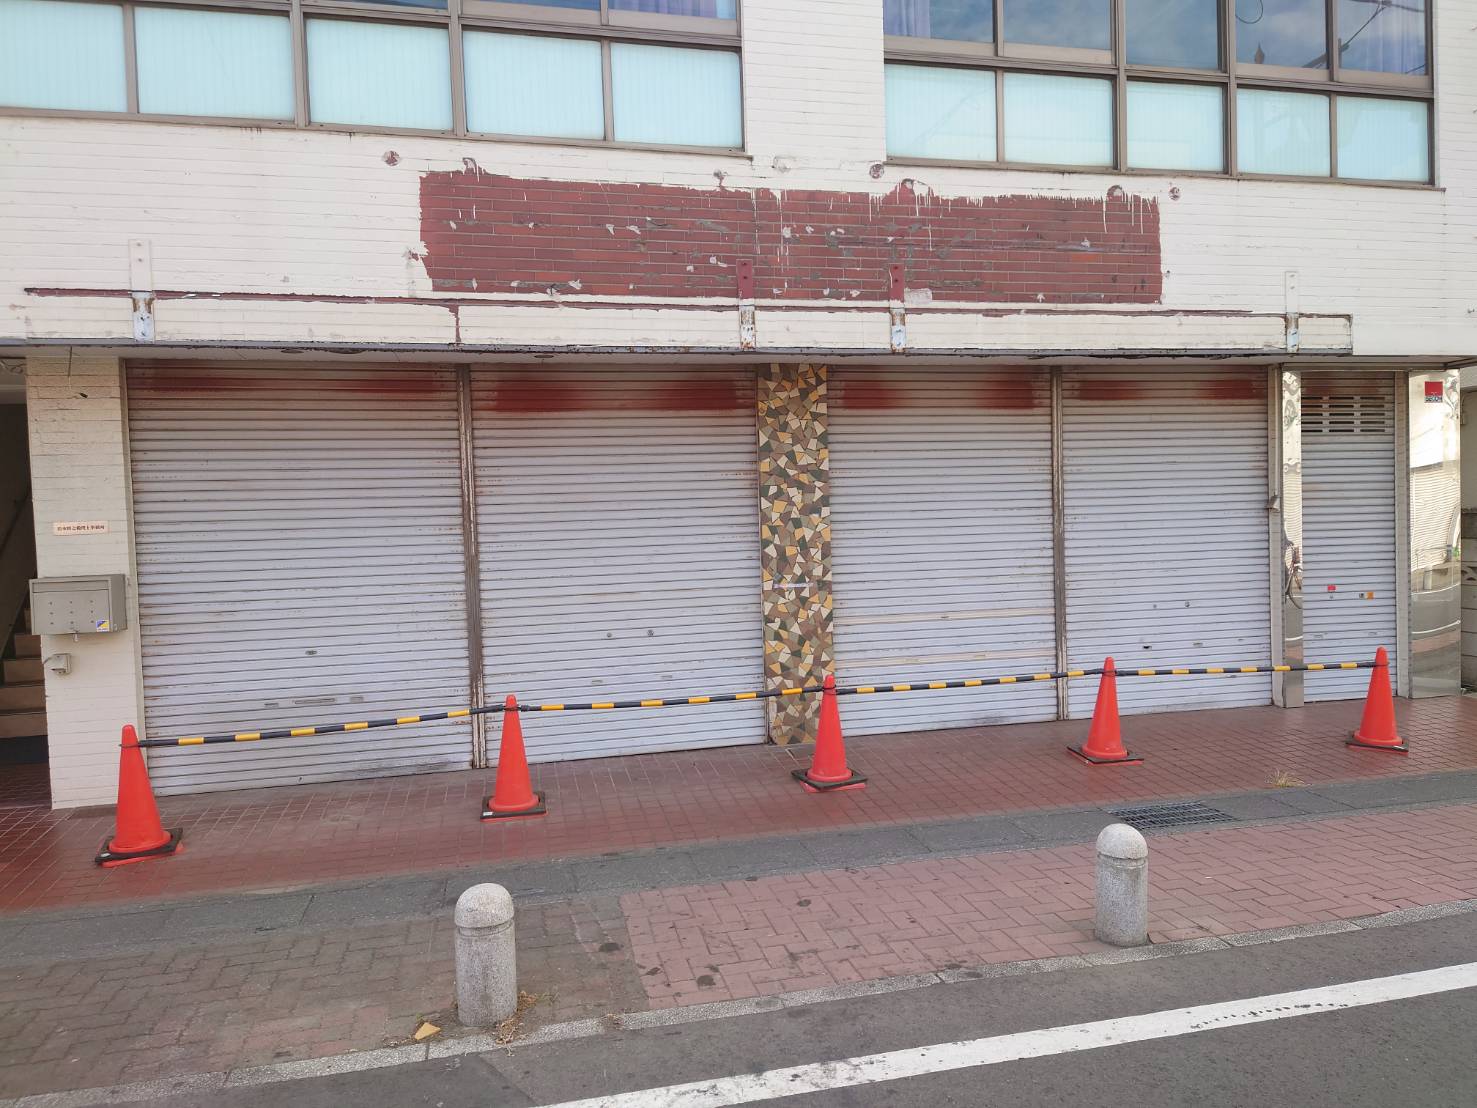 栃木銀行蒲生支店の隣にあった肉屋さん「ミートショップしのざき」が閉店して、空きテナントになっていました【がやてっく閉店】